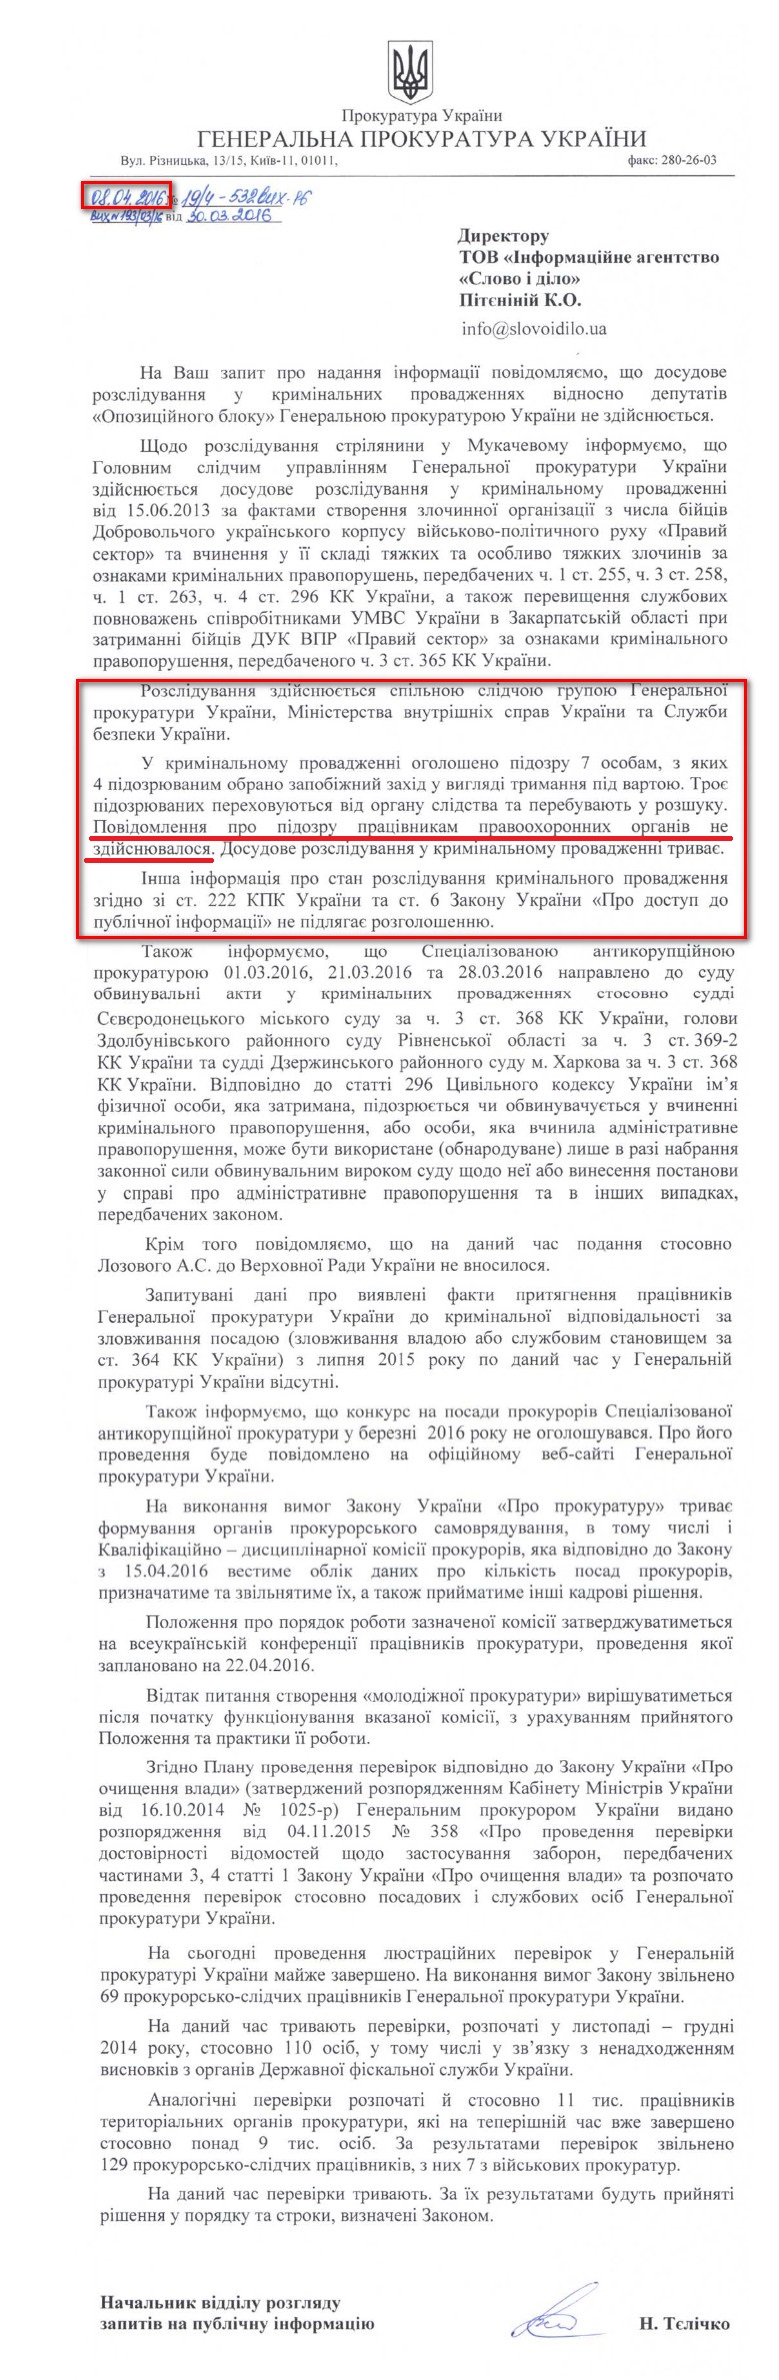 Лист начальника відділу розгляду запитів на публічну інформацію ГПУ Тєлічко Н. від 8 квітня 2016 року